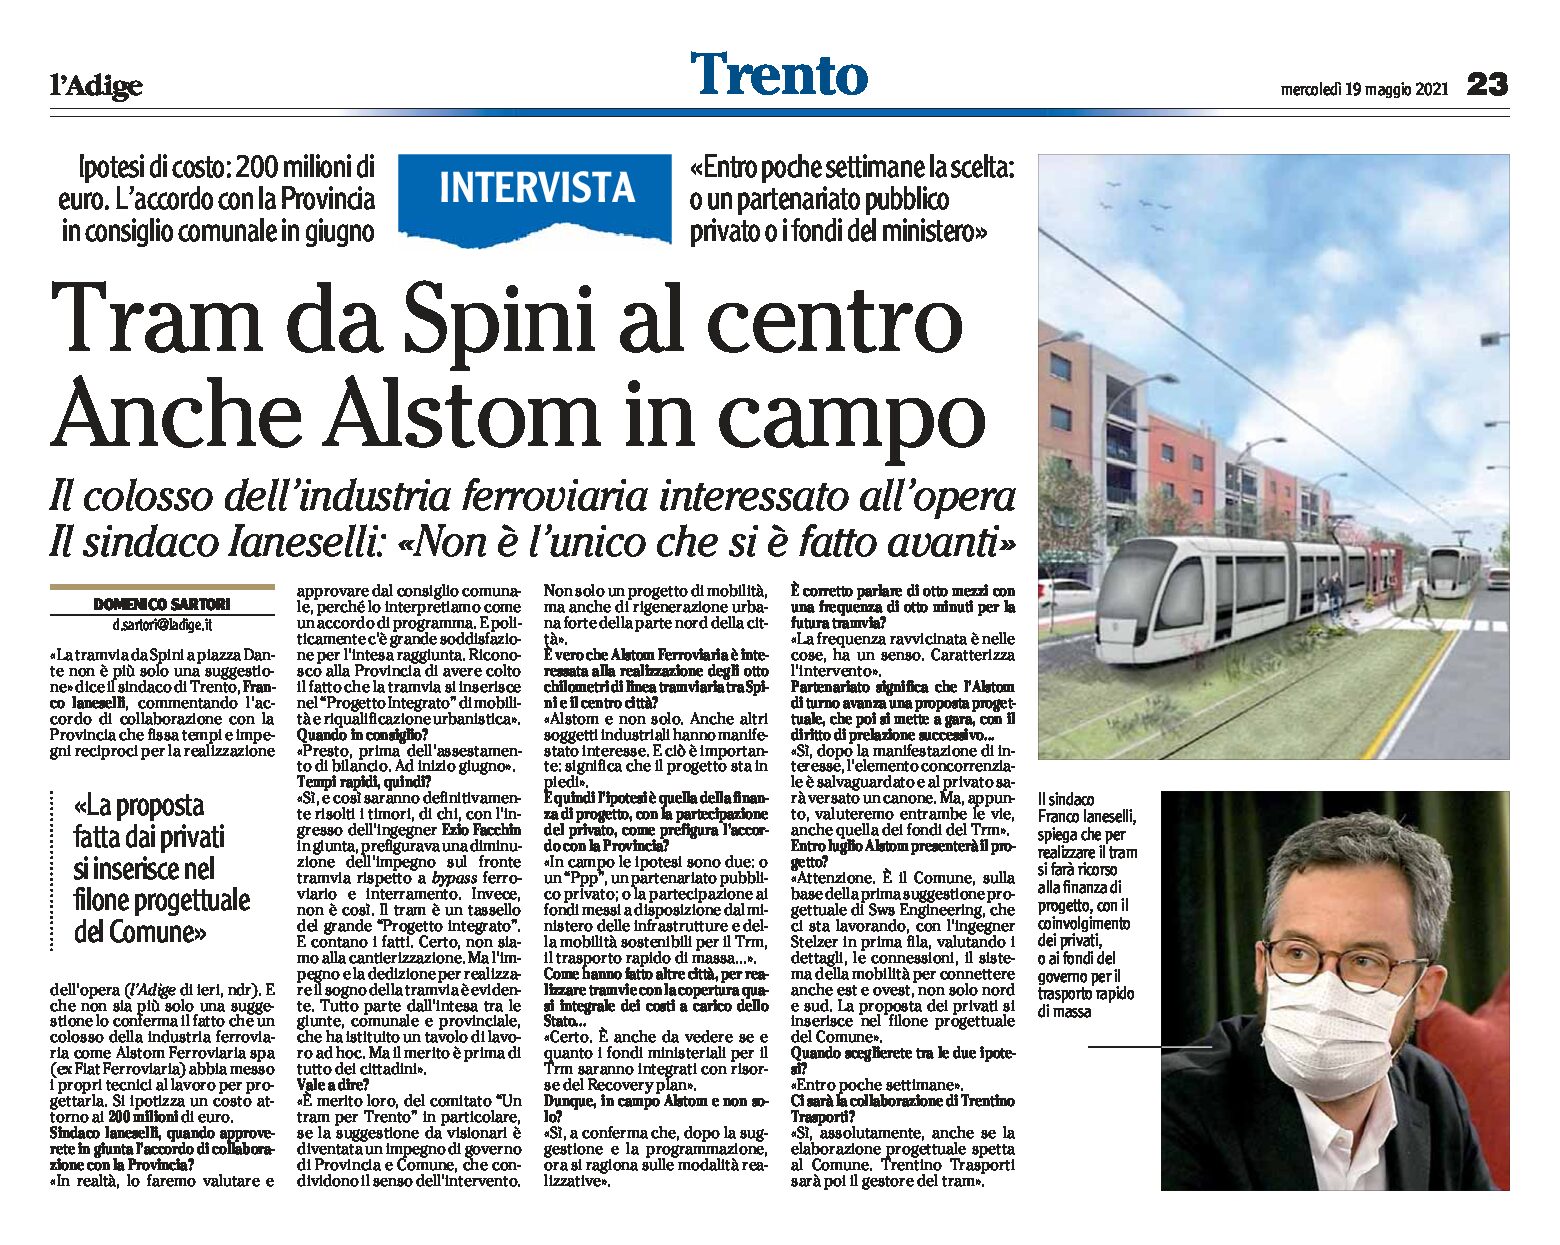 Trento: tram da Spini al centro. Anche Alstom in campo